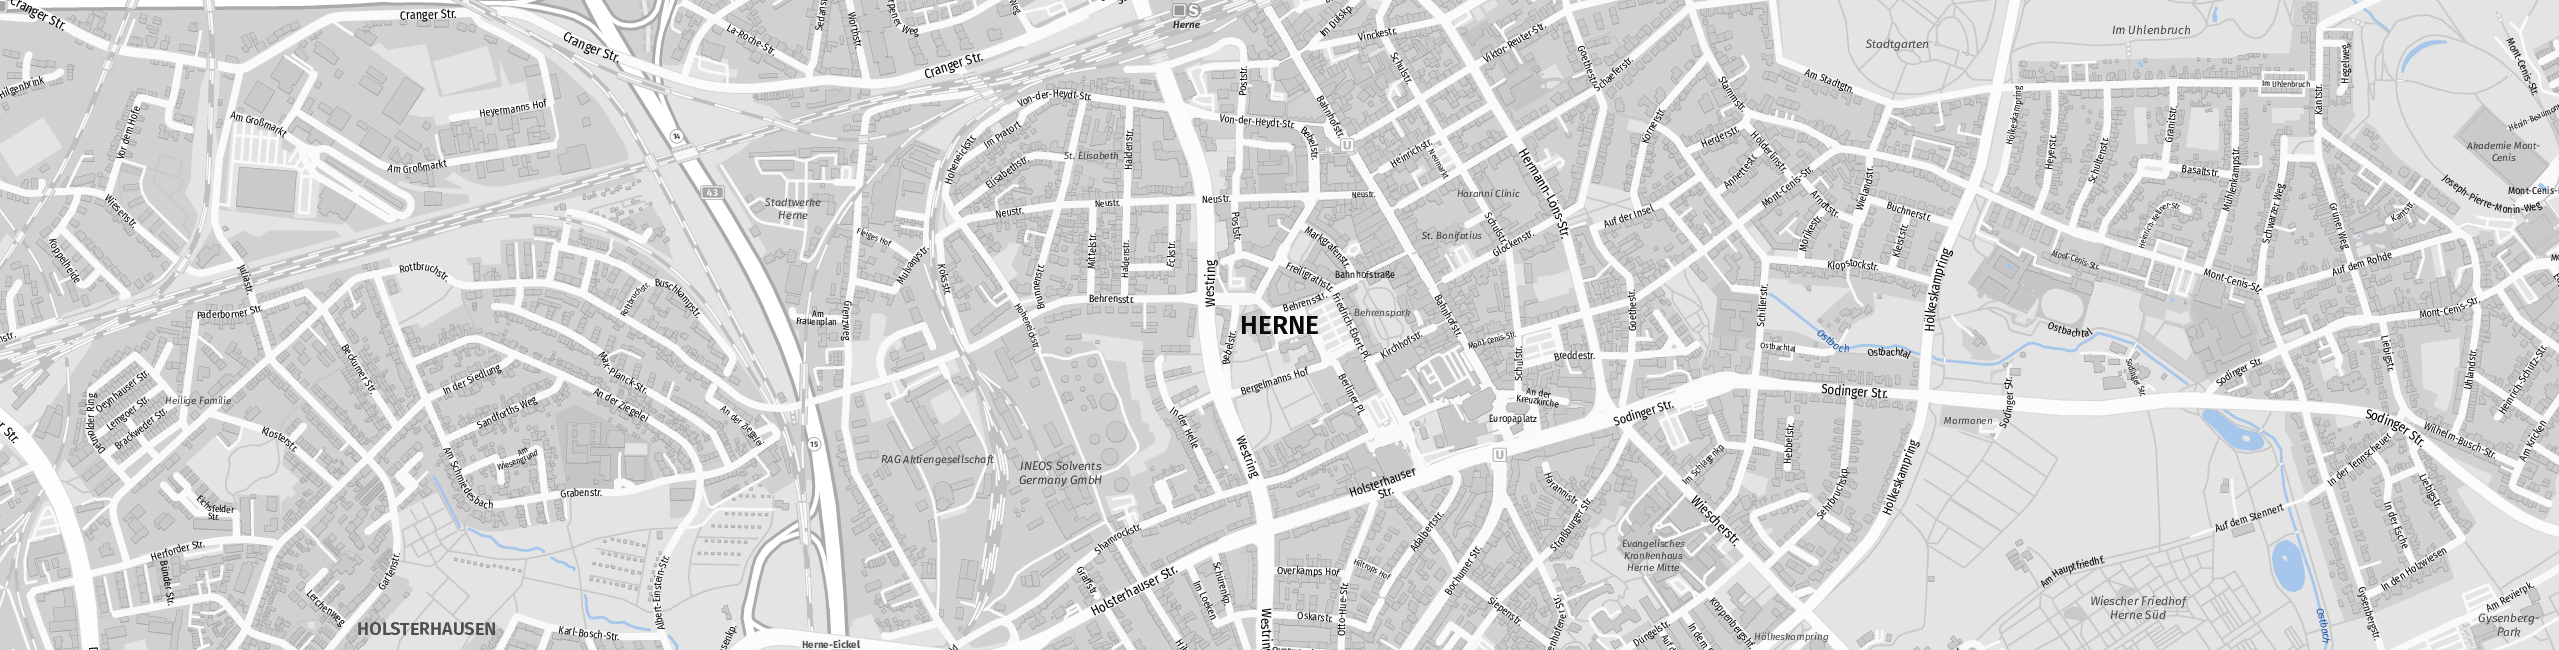 Stadtplan Herne zum Downloaden.